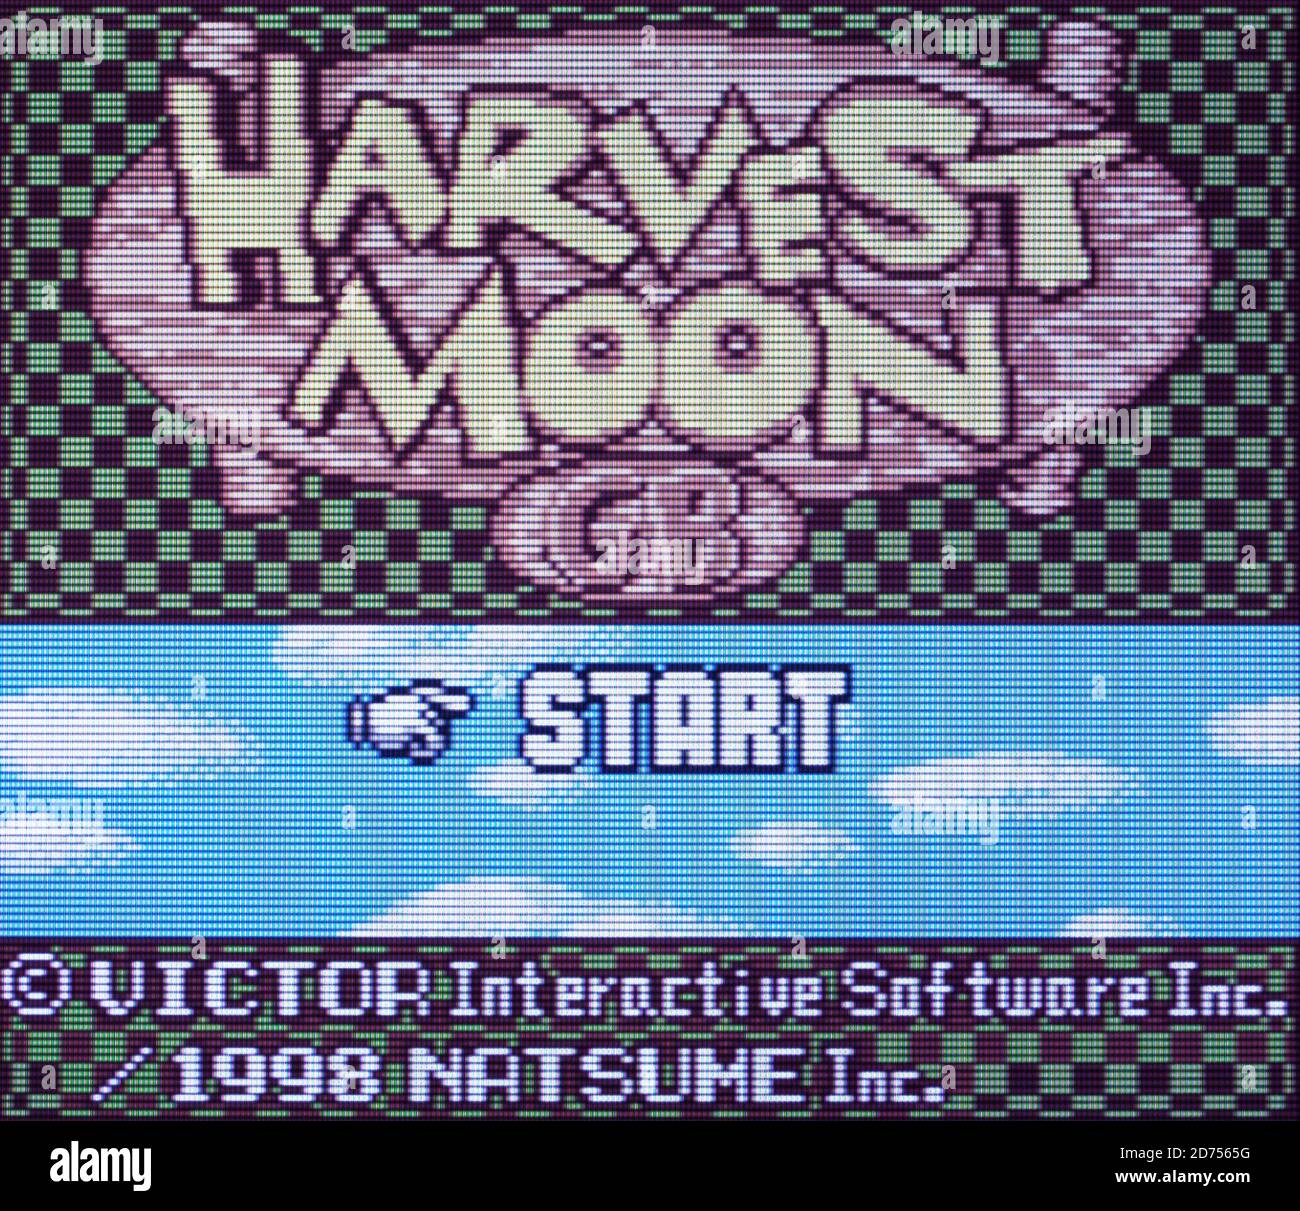 Harvest Moon - Nintendo Game Boy Color Videogame - Editorial à utiliser uniquement Banque D'Images